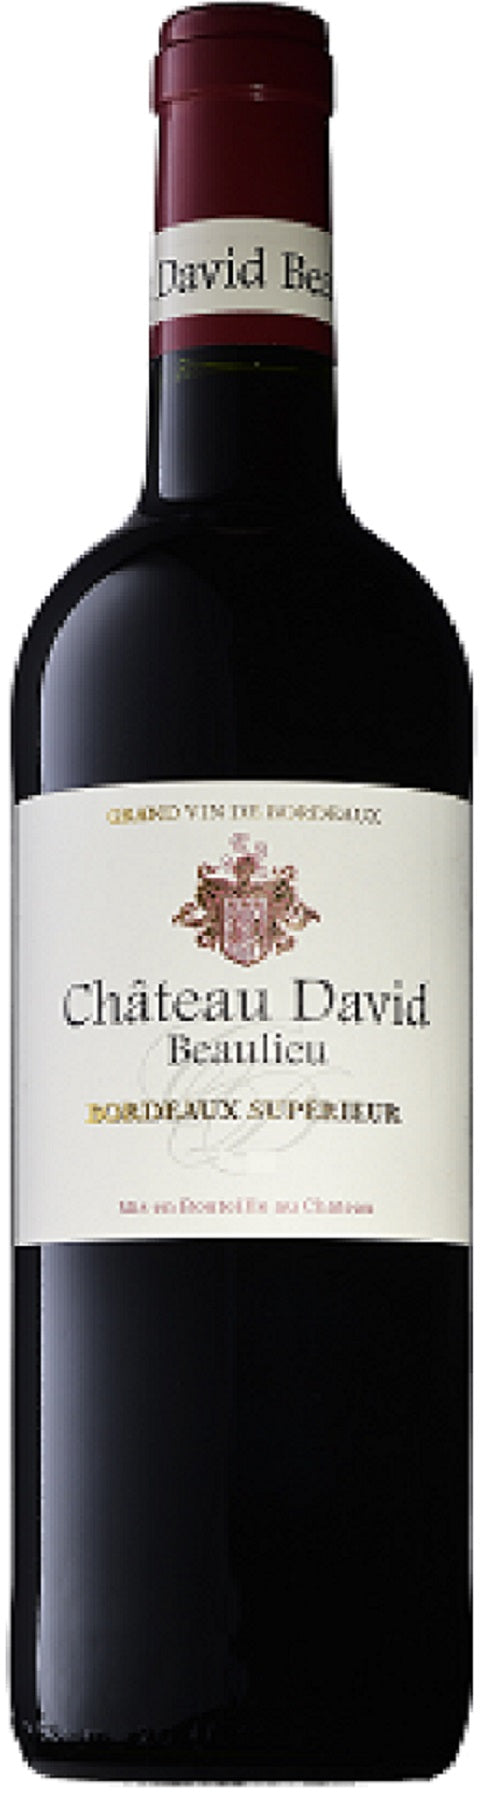 Chateau David Beaulieu Bordeaux Superieur 2018